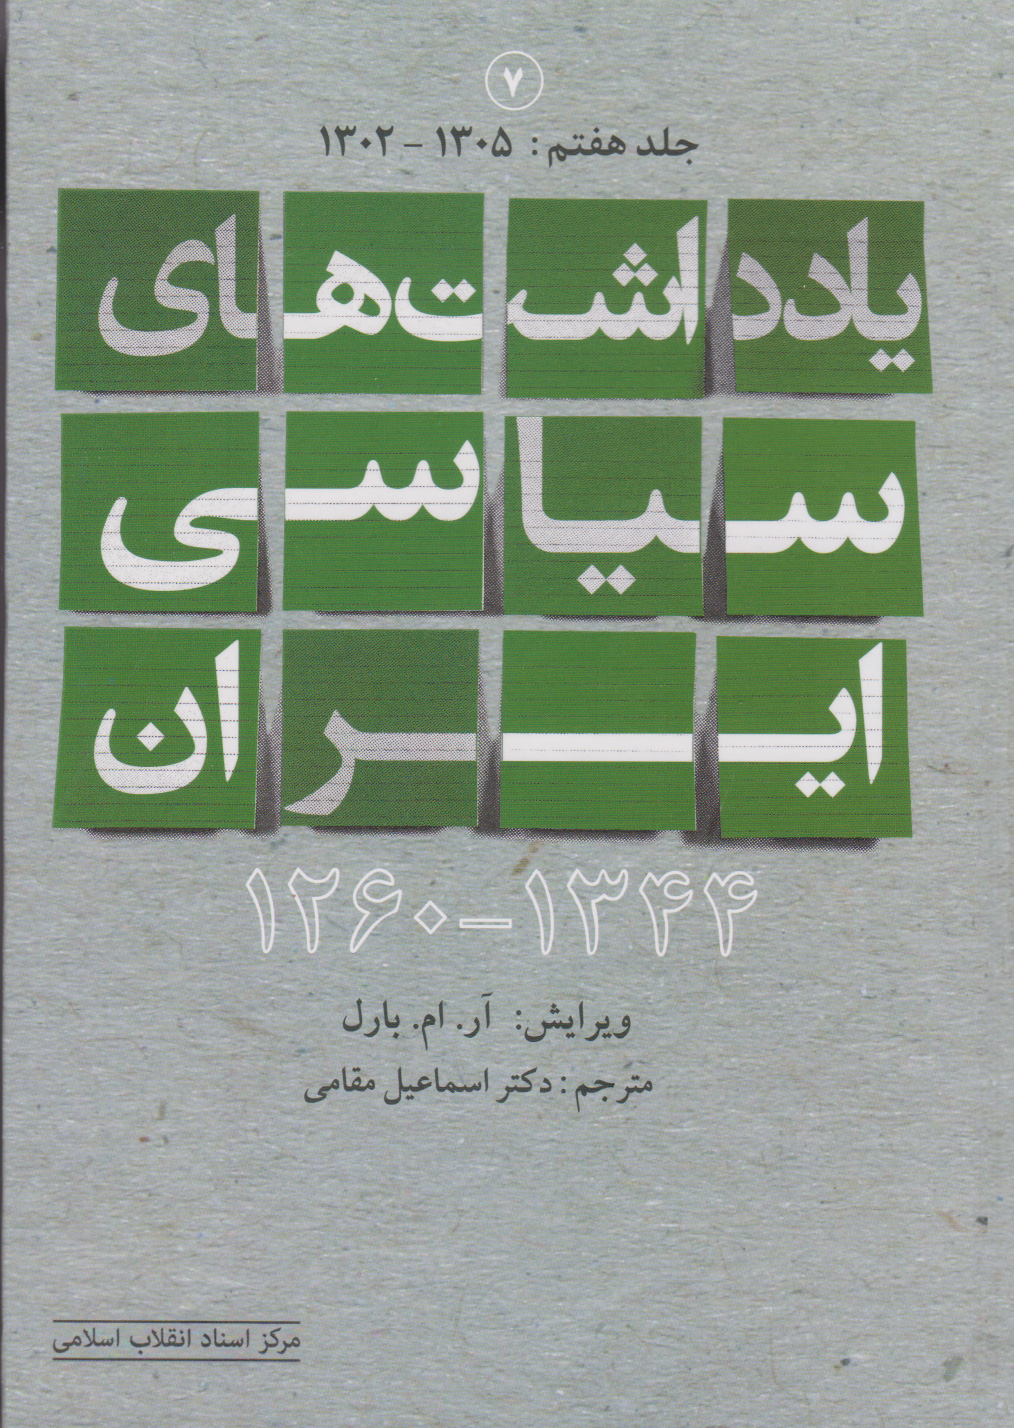  کتاب یادداشت های سیاسی ایران 1344-1260 (جلد هفتم)